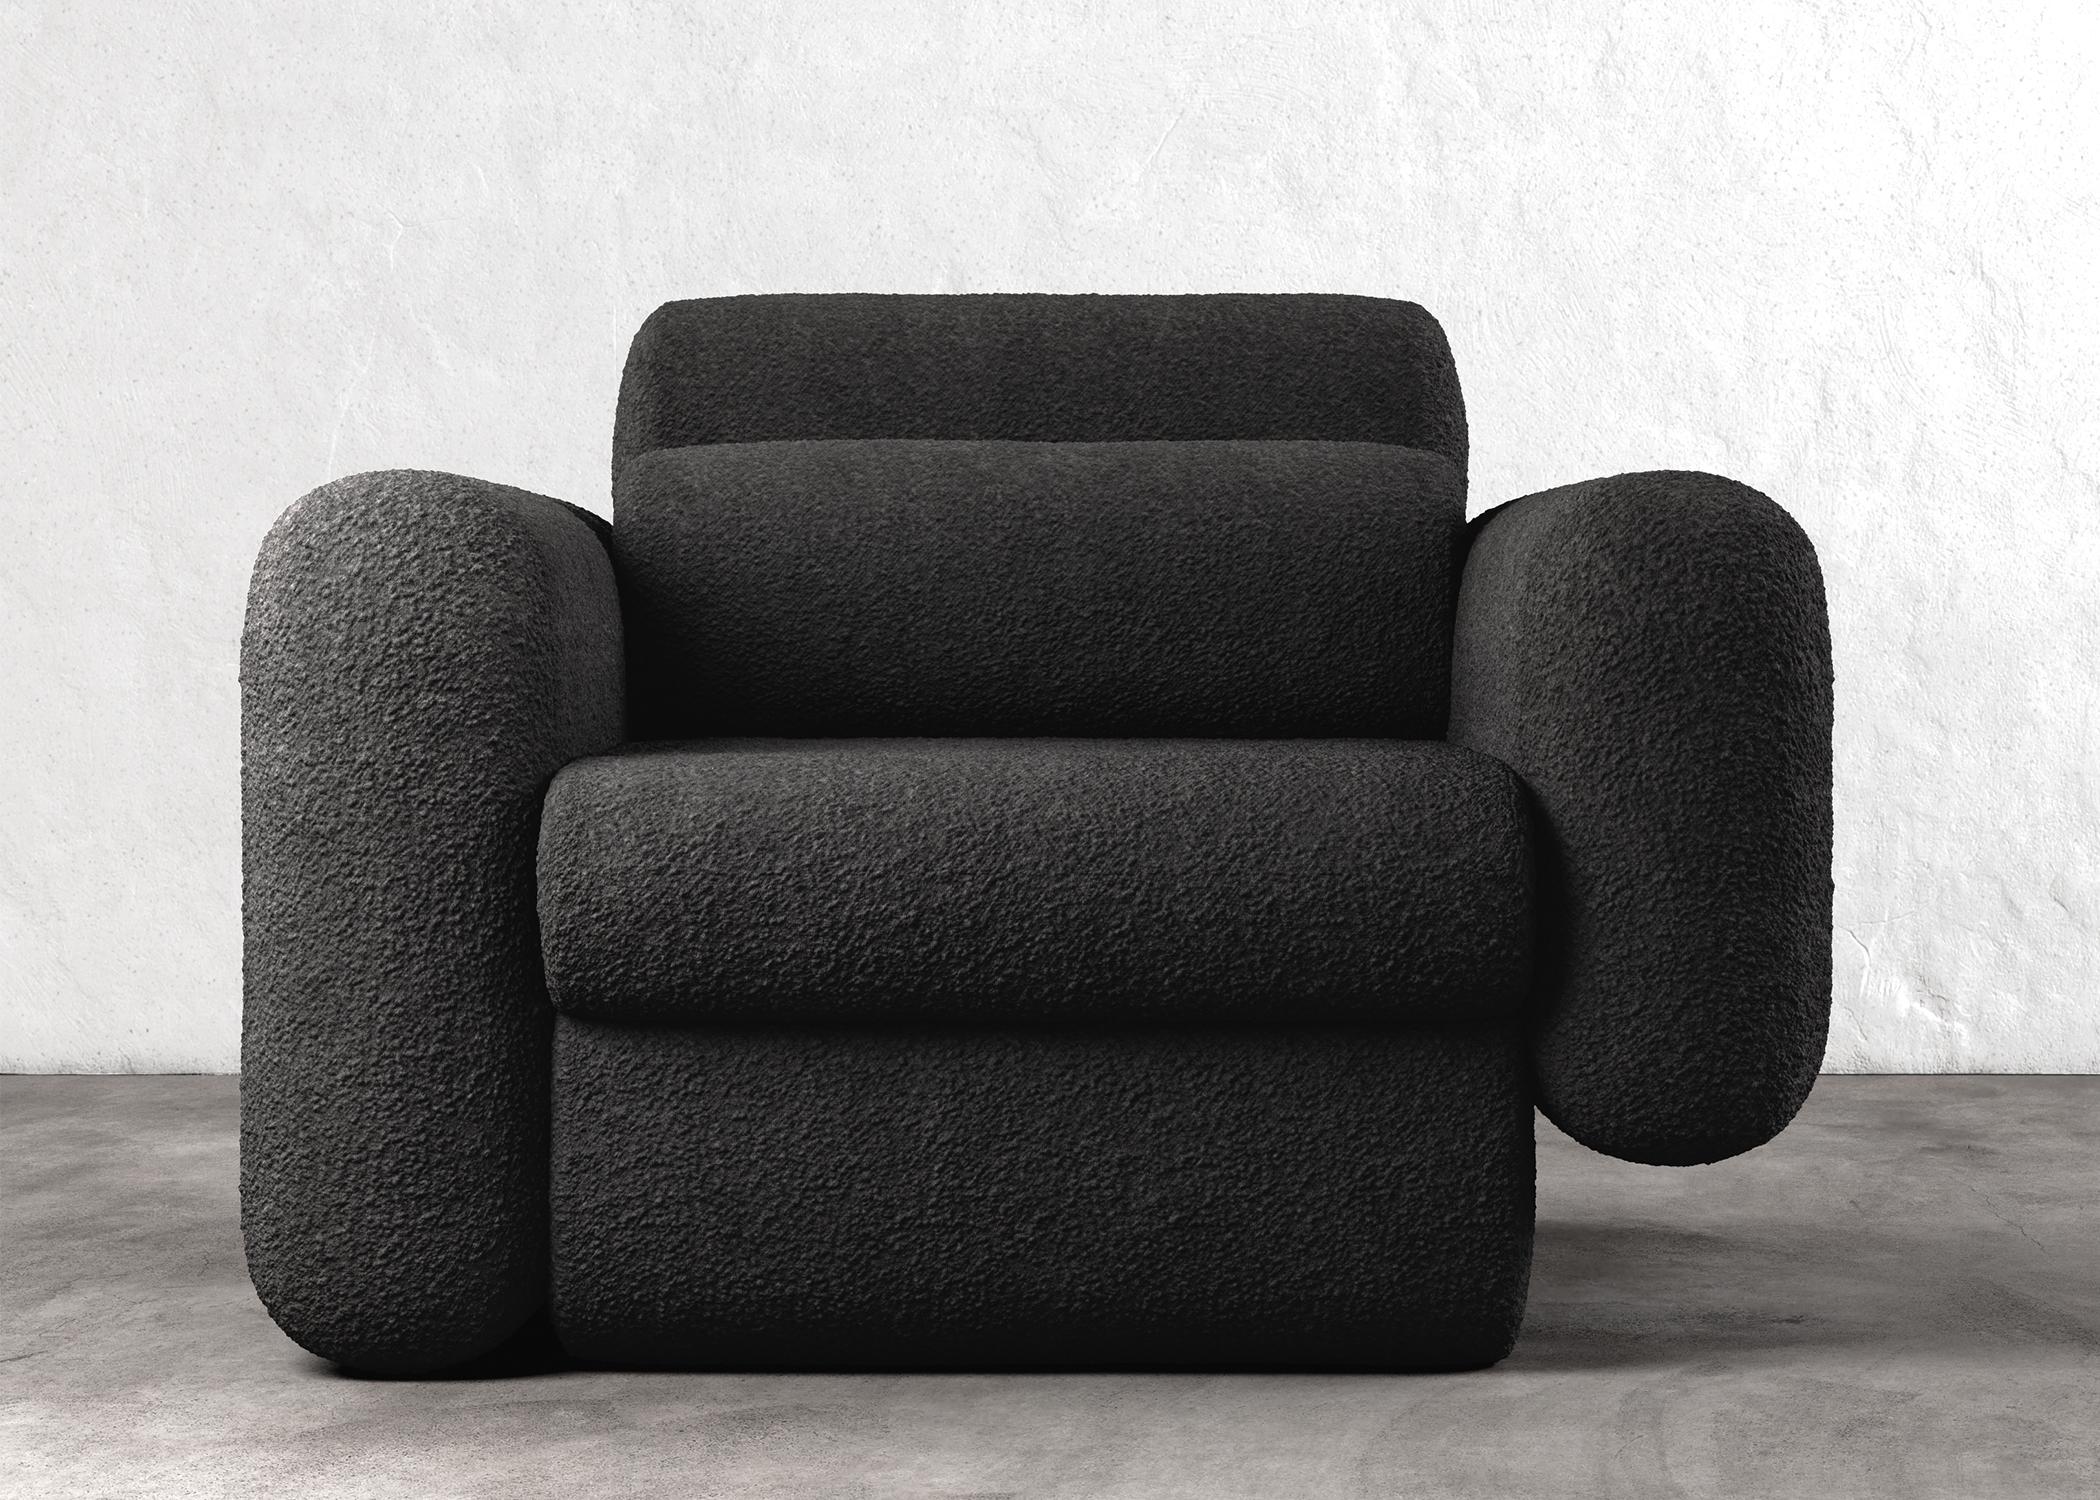 Chaise asymétrique moderne asymétrique sectionnelle en bouclette noire

La chaise Asym est un meuble étonnant qui présente des éléments de conception asymétriques qui créent une esthétique unique et moderne. La tension entre les éléments